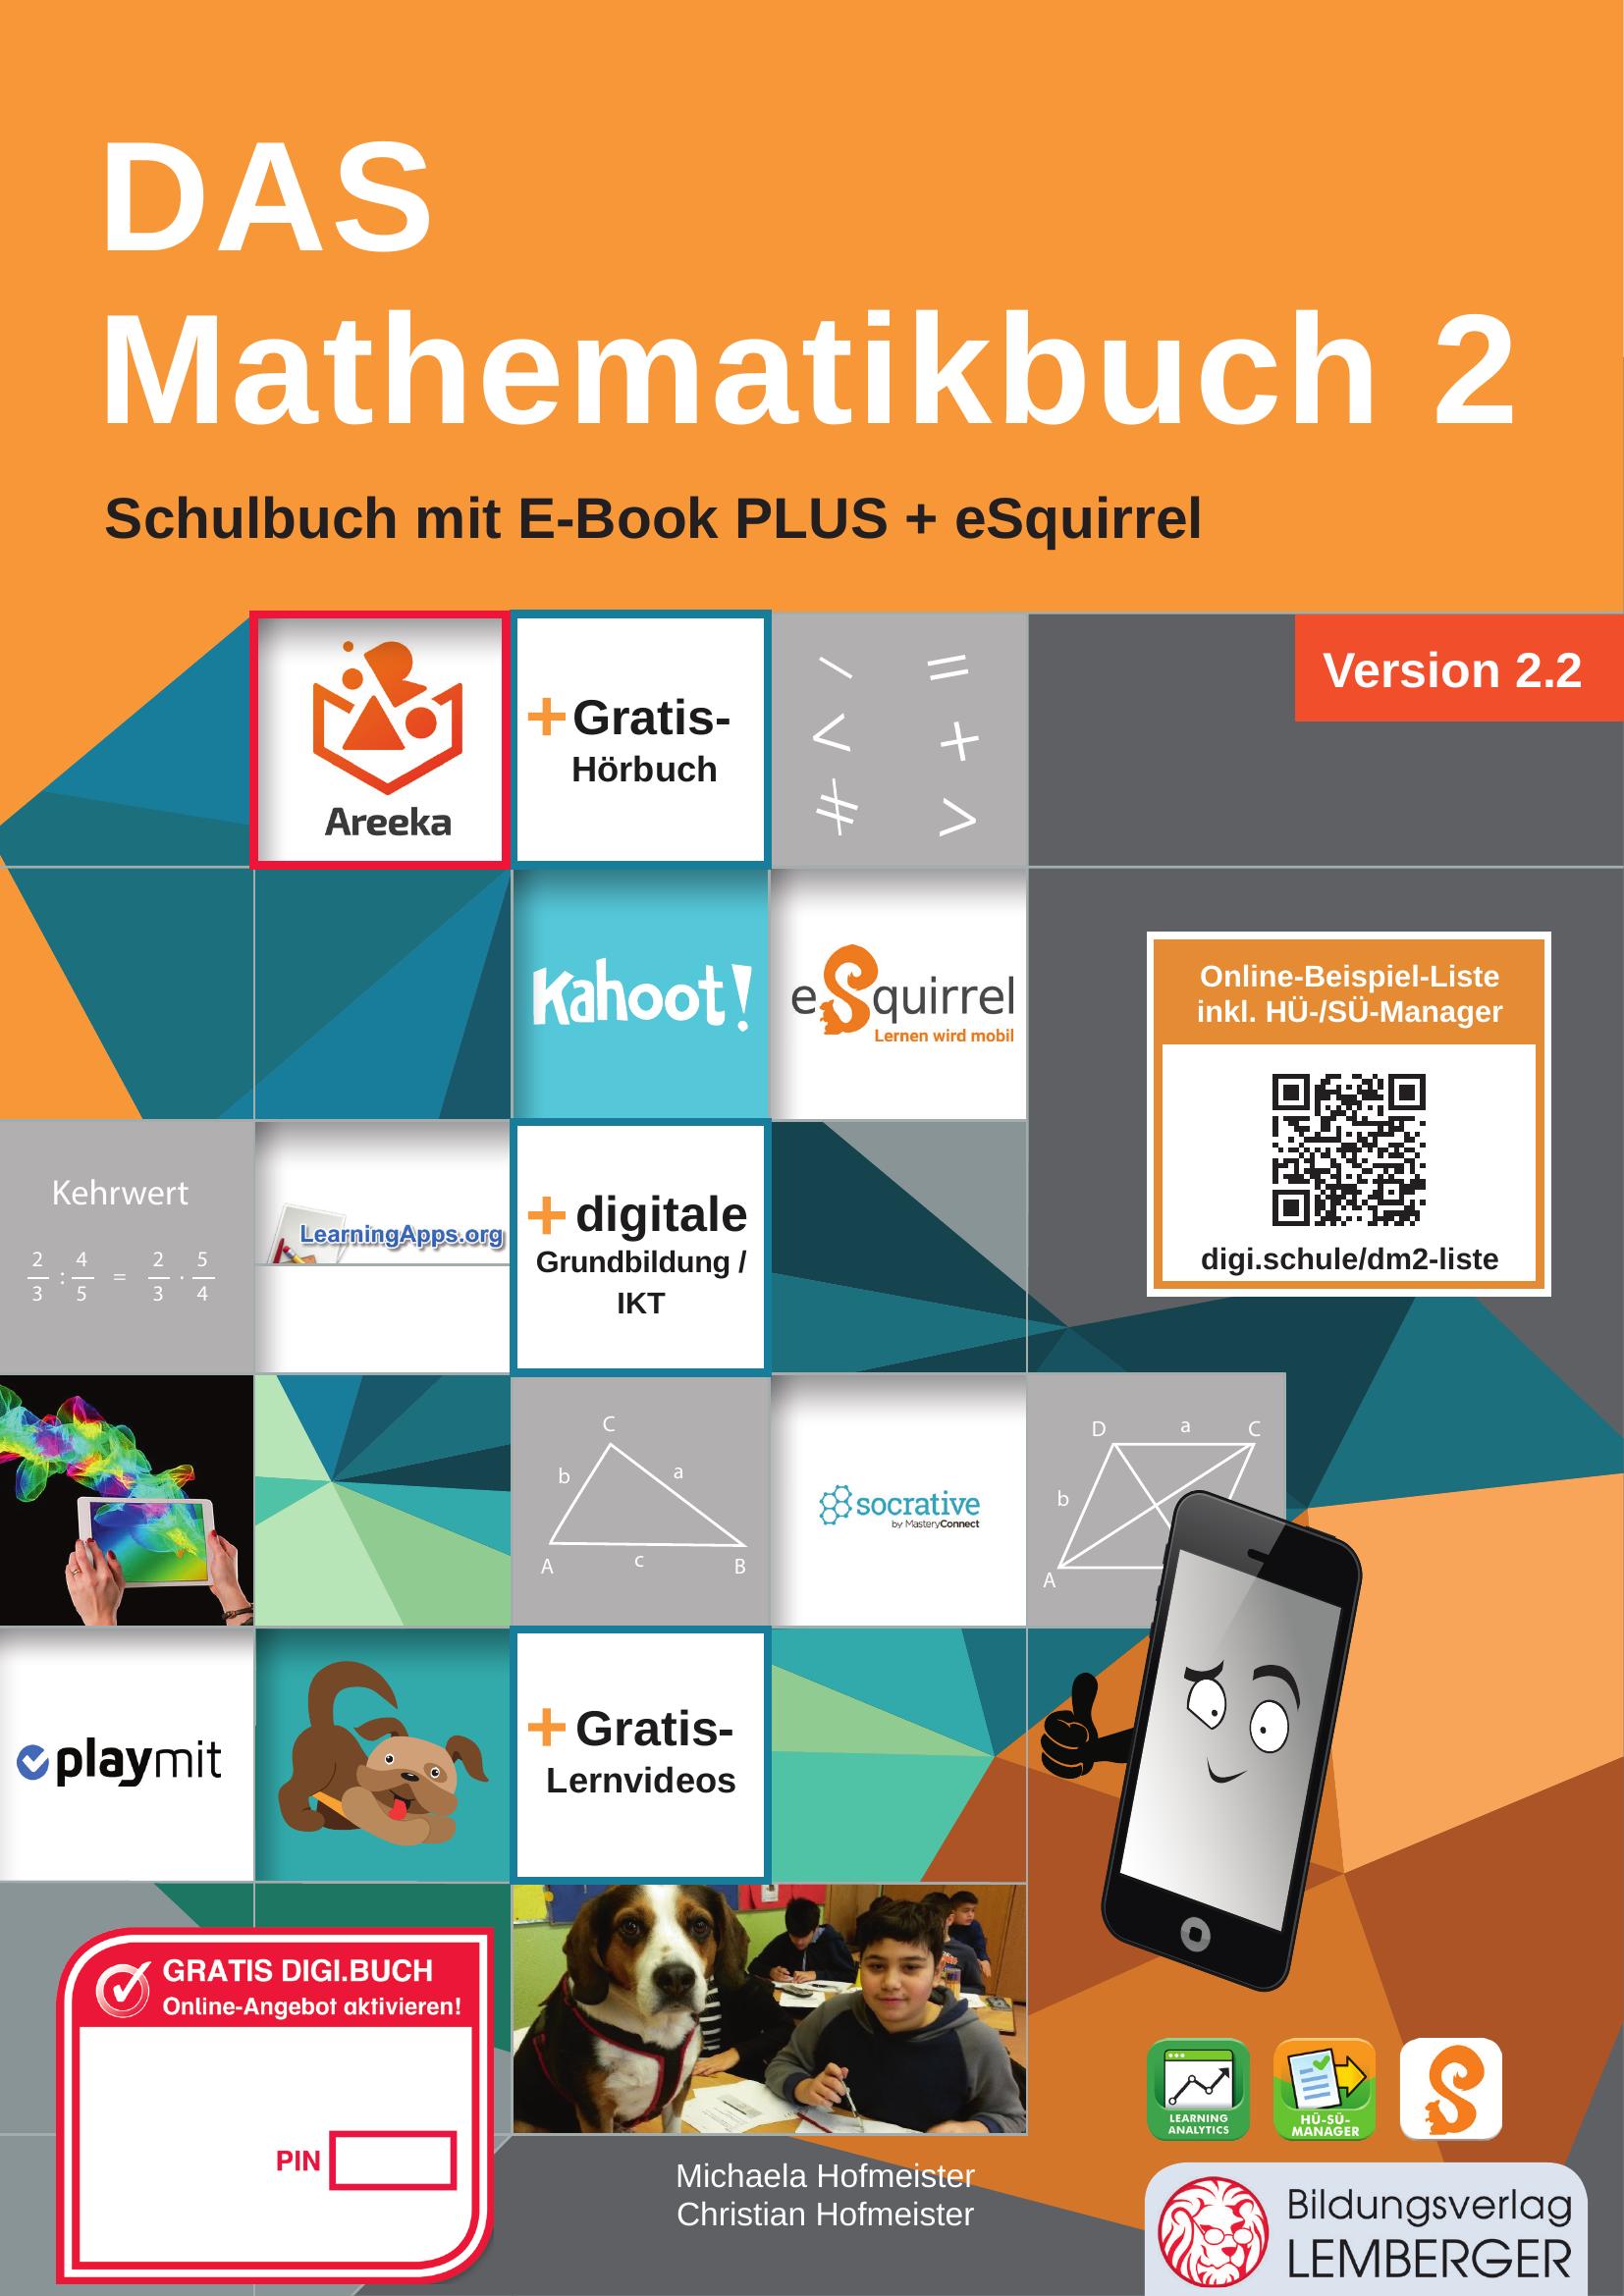 DAS Mathematikbuch 2 IKT v2.2